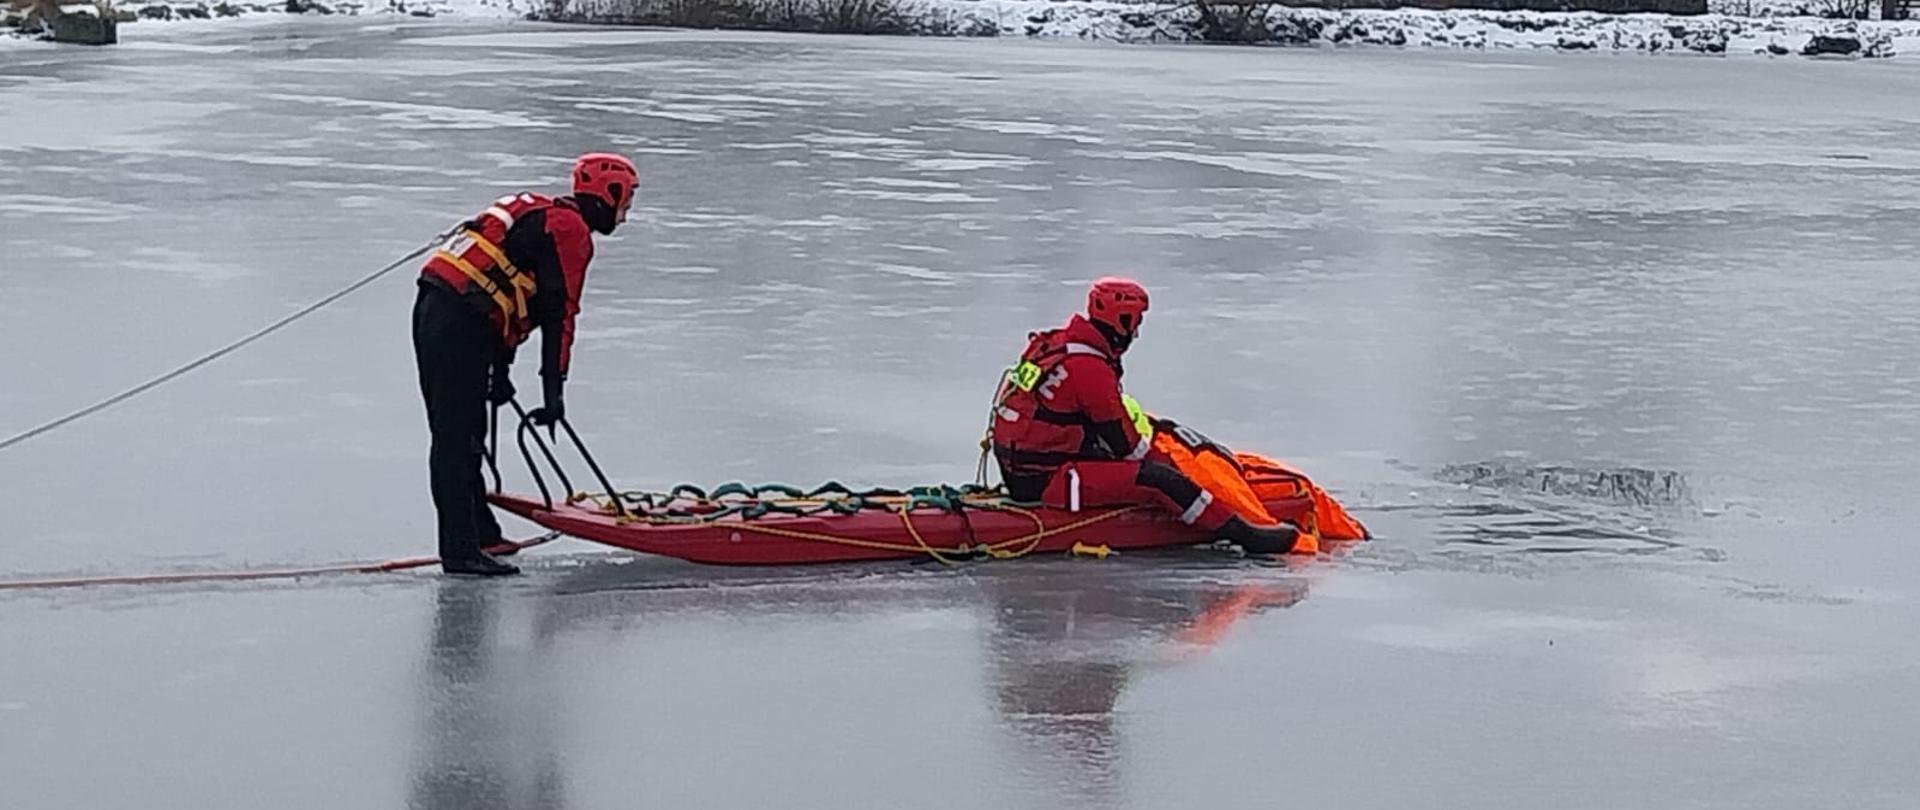 Zdjęcie przedstawia ratowników podczas ćwiczeń na lodzie z użyciem sań lodowych.